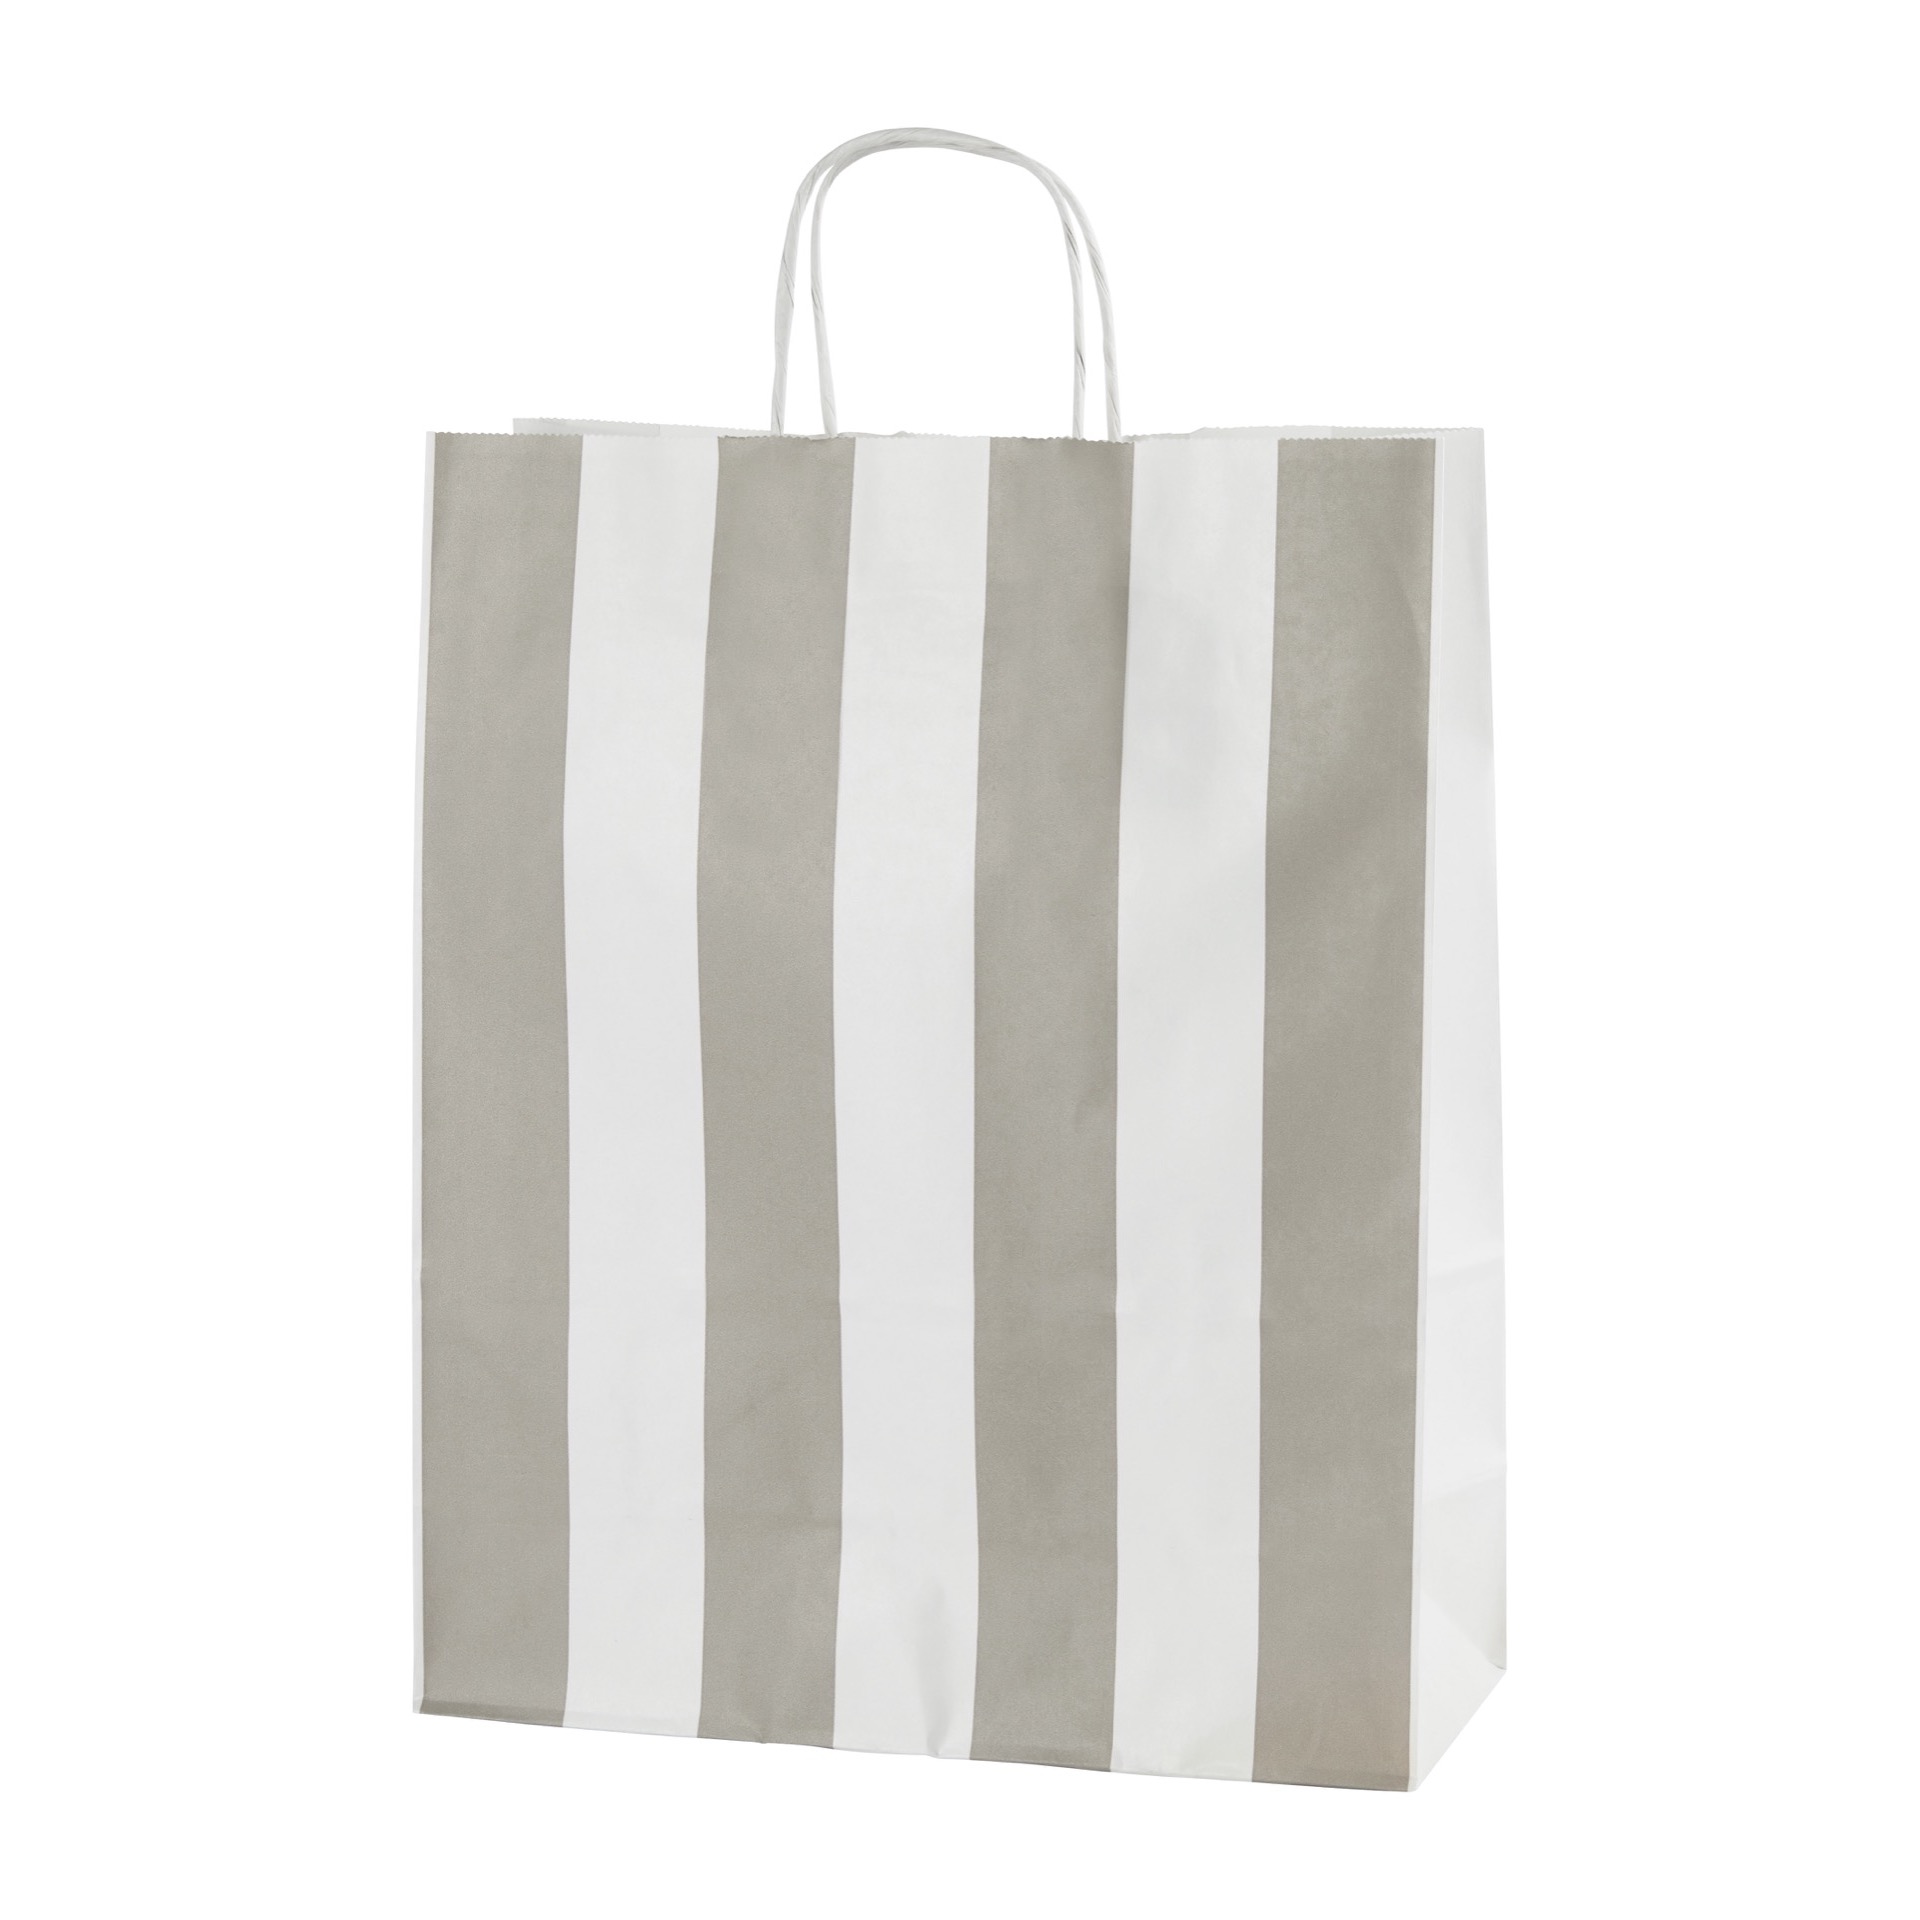 100 Flat Merchandise Paper Bags Silver Gray Chevron Stripes on White 8.5 x 11" 